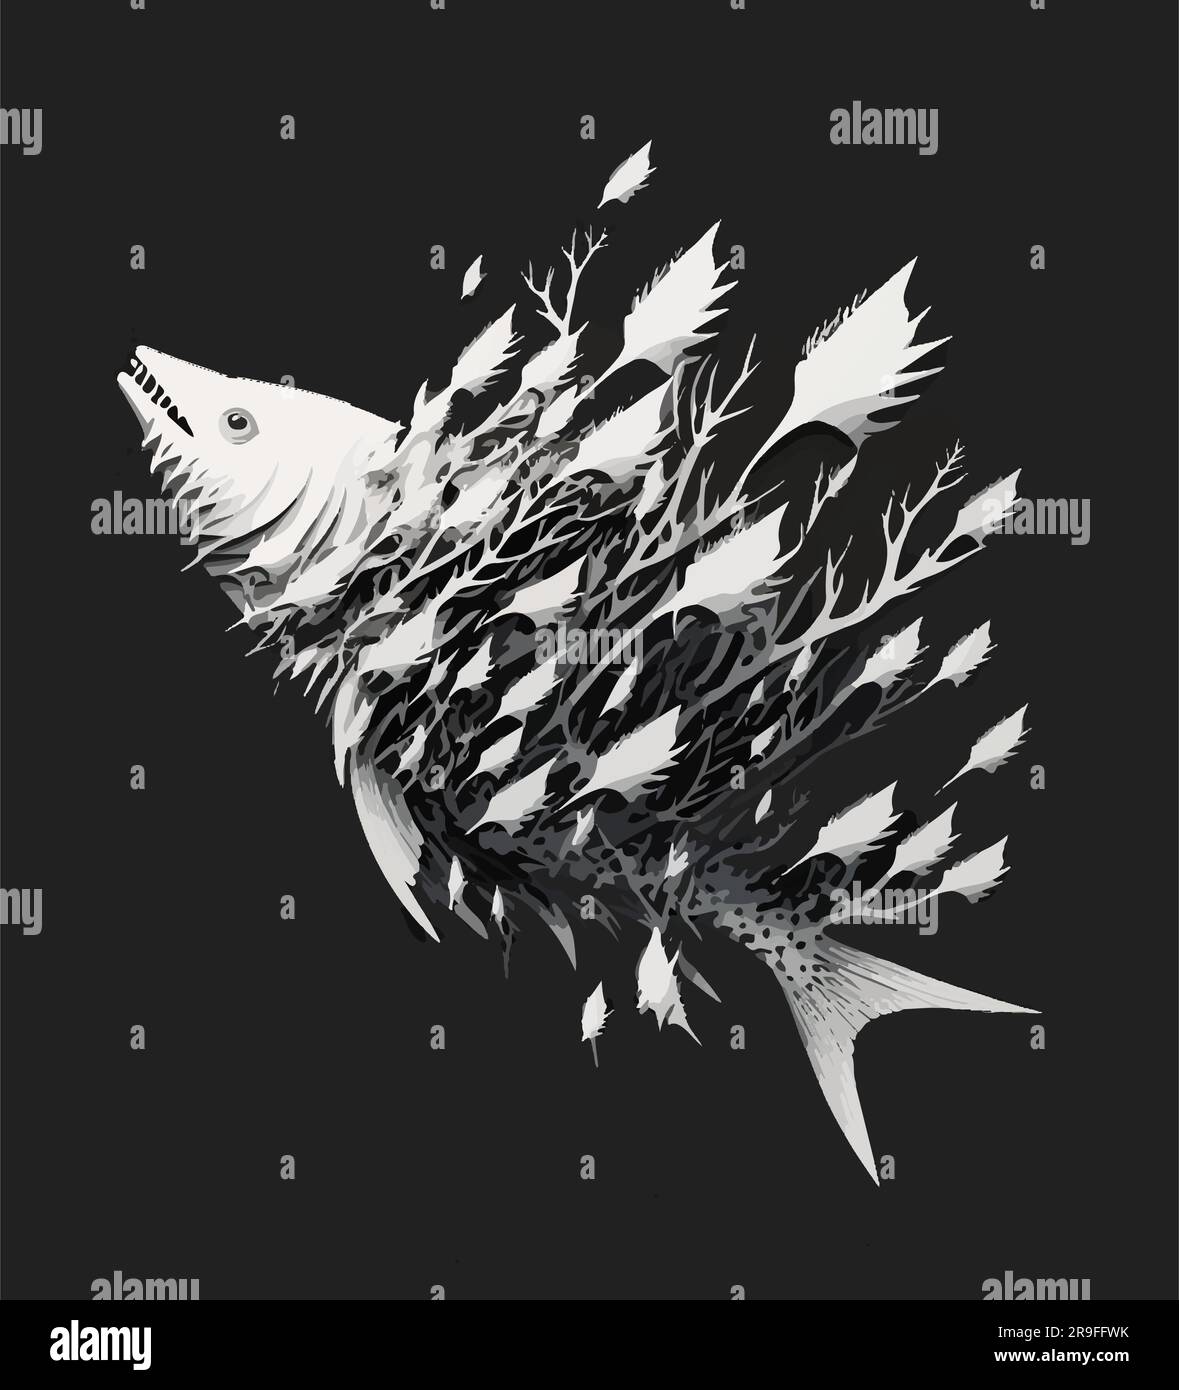 Illustrazione astratta in bianco e nero di un pesce che si dissolve, inquinamento e ambientalismo Illustrazione Vettoriale